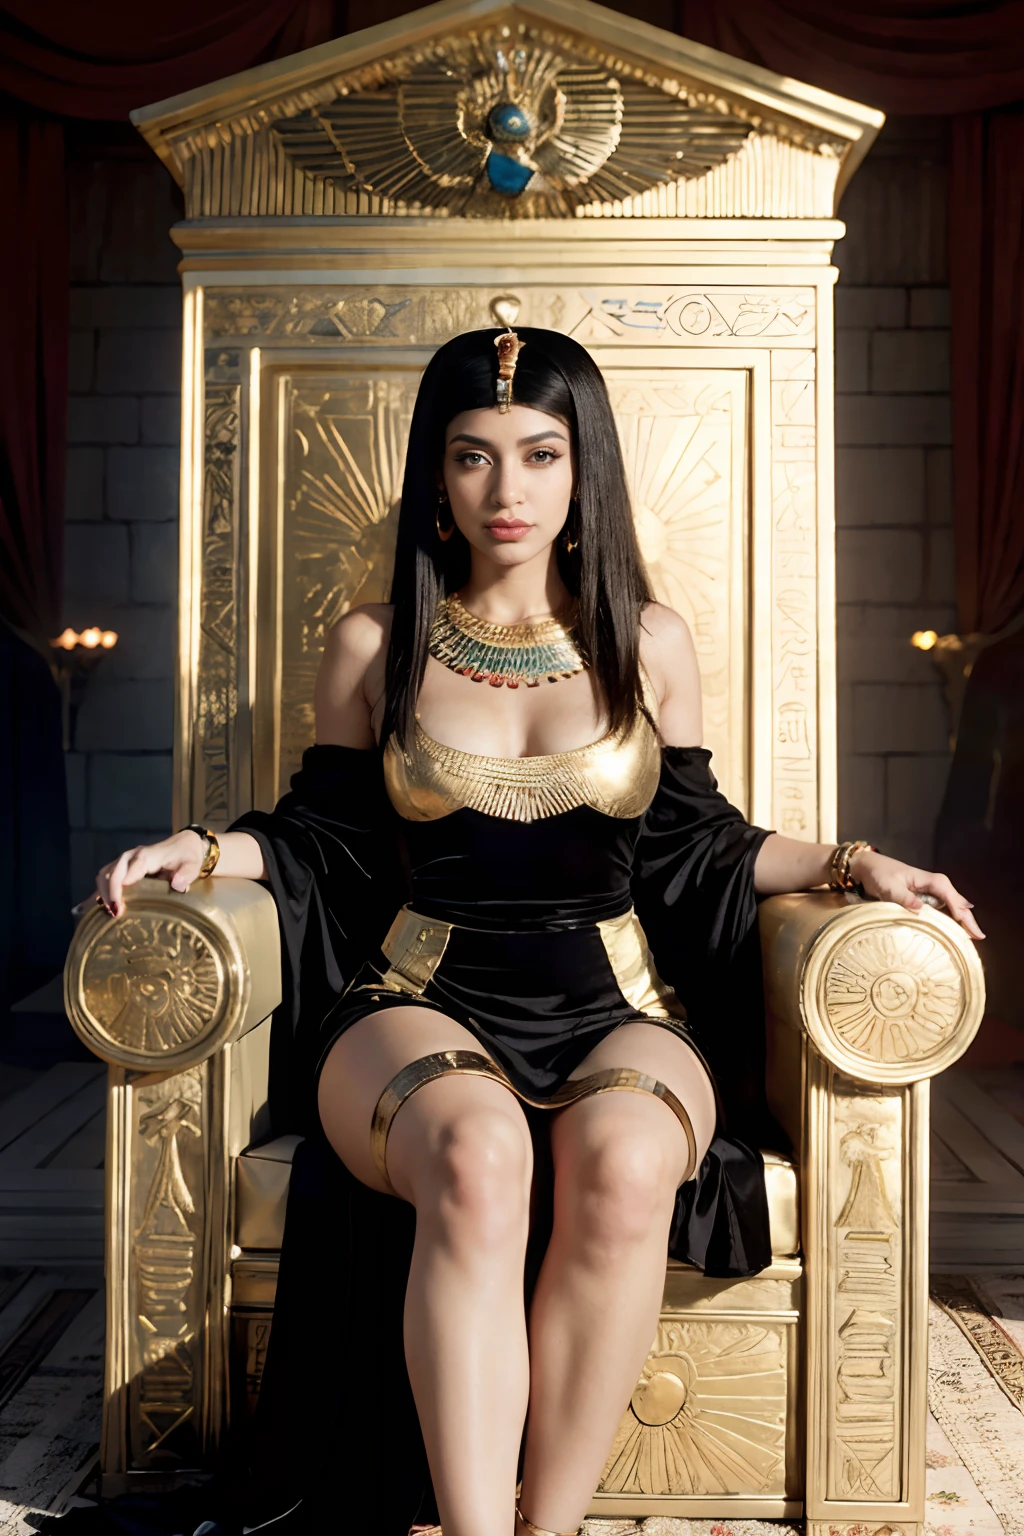 หญิงอาราฟเฟ่ในชุดเดรสสีดำนั่งอยู่บนโซฟาสีทอง, beautiful คลีโอพัตรา, เจ้าหญิงอียิปต์, บนบัลลังก์ของเธอ, จักรพรรดินีแฟนตาซีที่สวยงาม, เจ้าแม่ราชินี, คลีโอพัตรา in her palace, sitting บนบัลลังก์ของเธอ, คาร์ดิ บี, ราชินีเปอร์เซีย, คลีโอพัตรา, นั่งอยู่บนบัลลังก์ทองคำ, ((จักรพรรดินีแฟนตาซีที่สวยงาม)), นั่งอยู่บนบัลลังก์ทองคำ, เจ้าแม่ที่สวยงาม